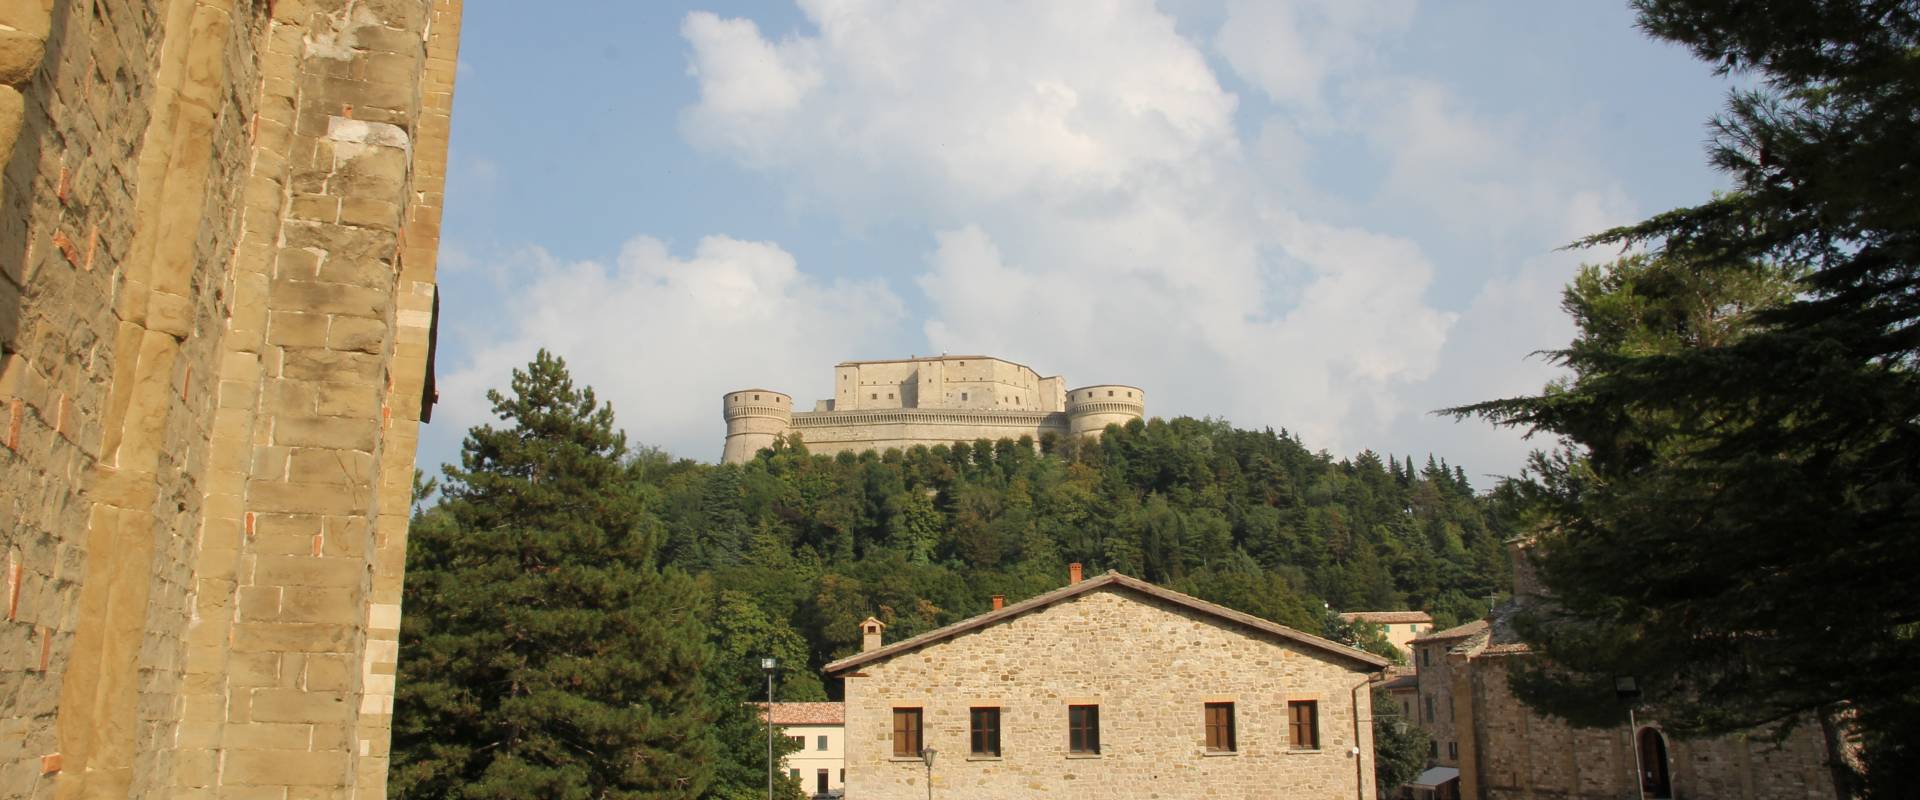 San Leo, forte di San Leo (17) foto di Gianni Careddu